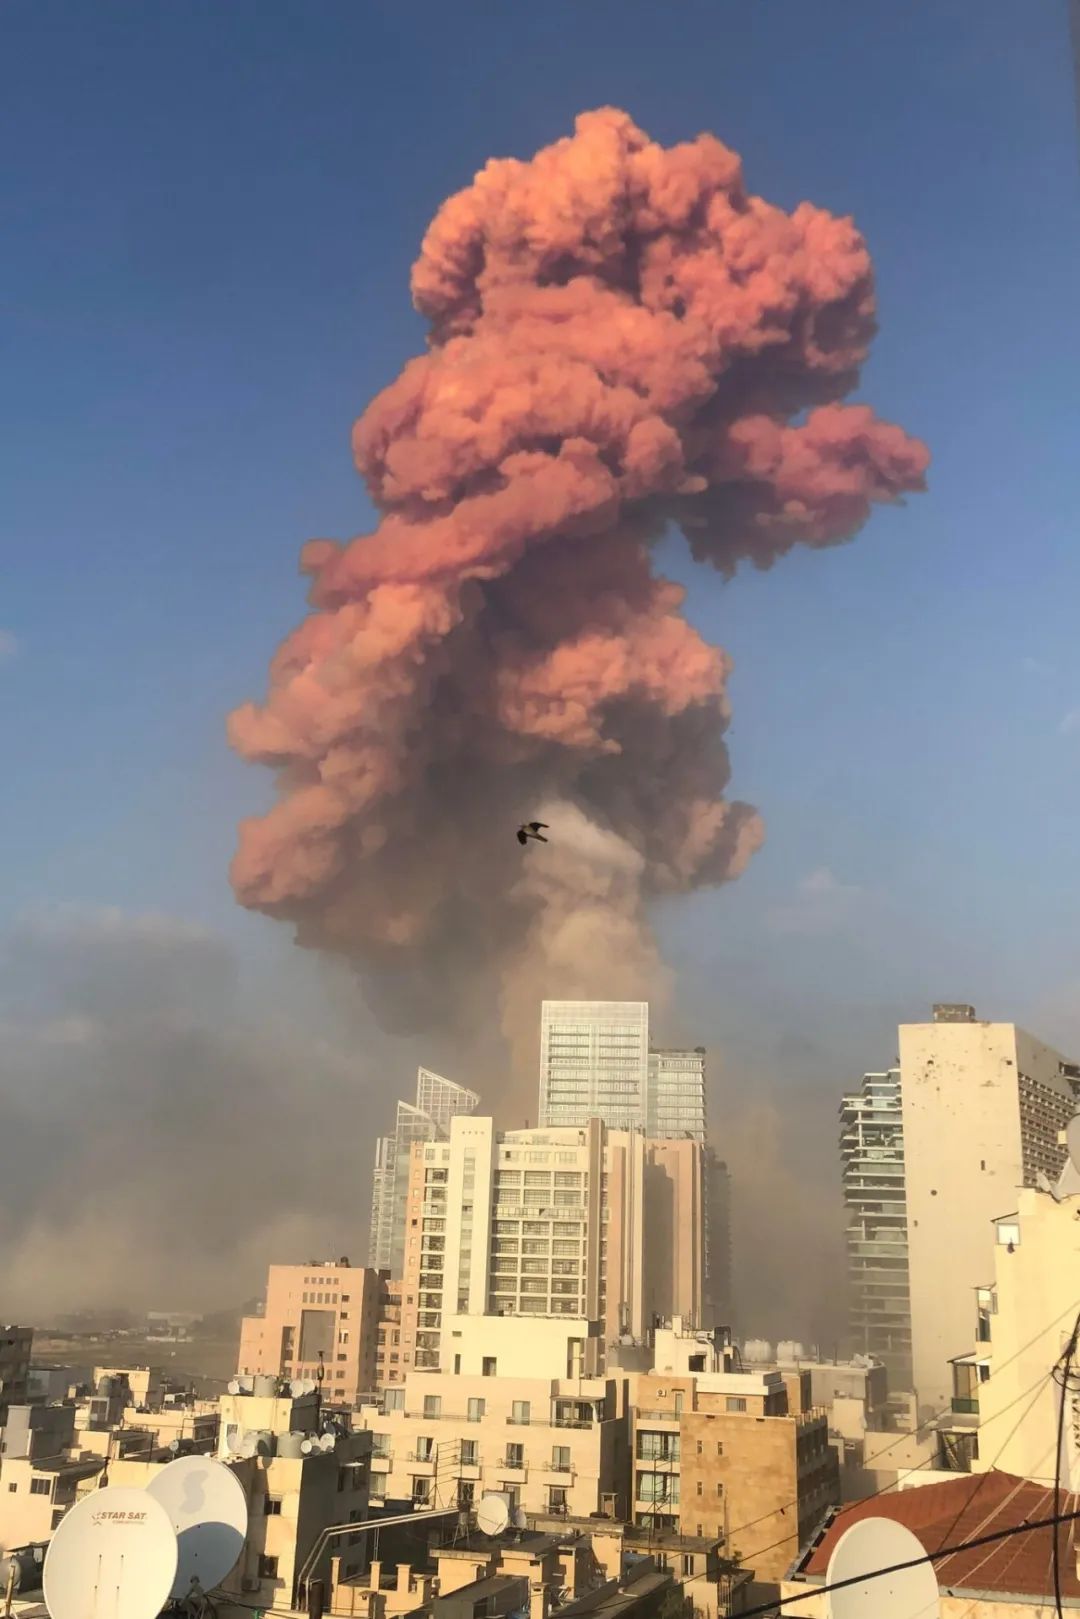 黎巴嫩大爆炸与以色列有关 国际问题专家马晓霖解读丨风向 凤凰网资讯 凤凰网